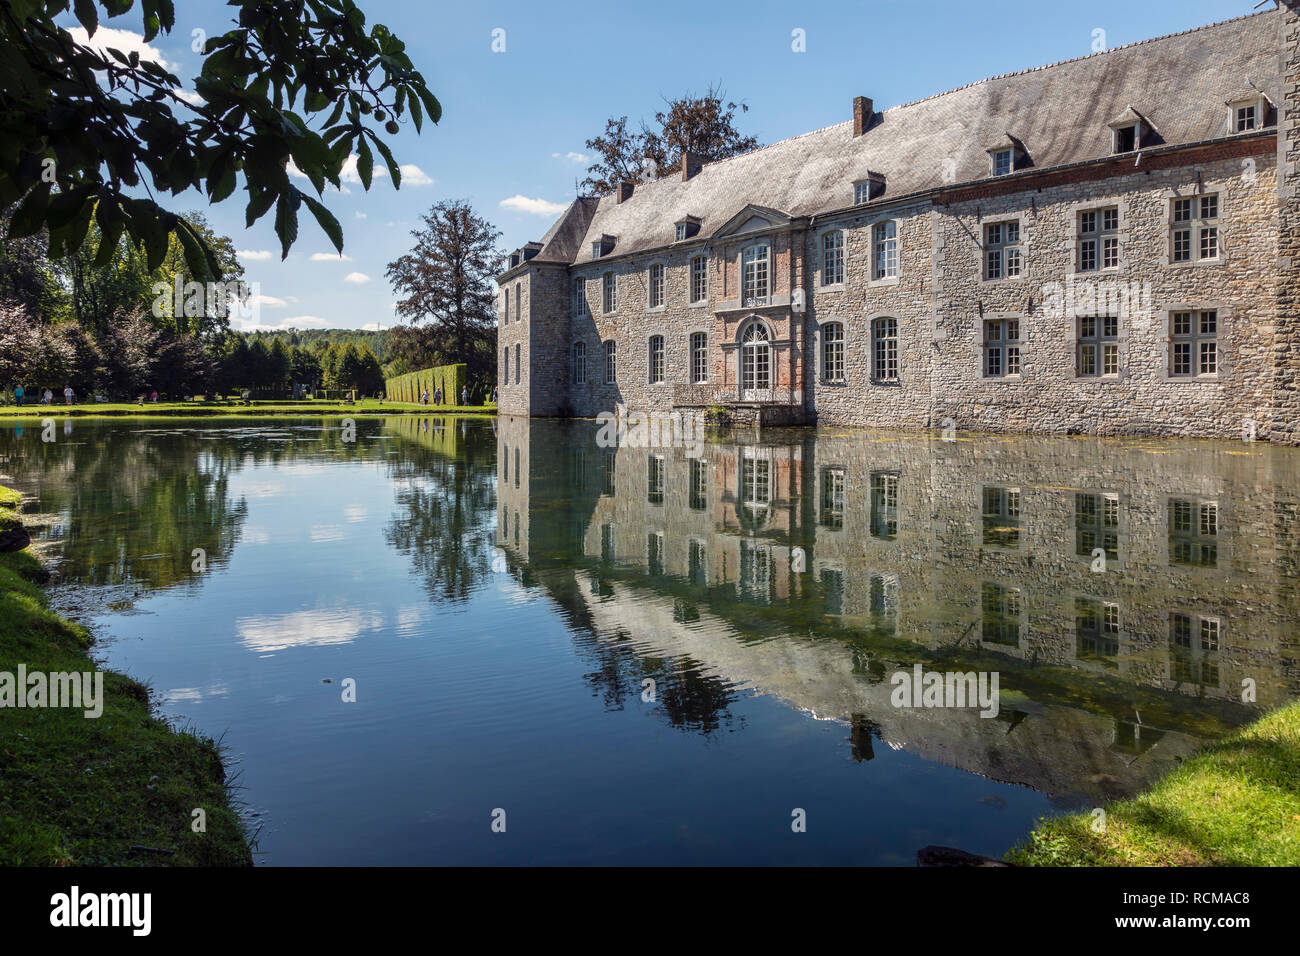 The chateau at Les Jardins d’Annevoie, Annevoie-Rouillon, Wallonia, Belgium Stock Photo